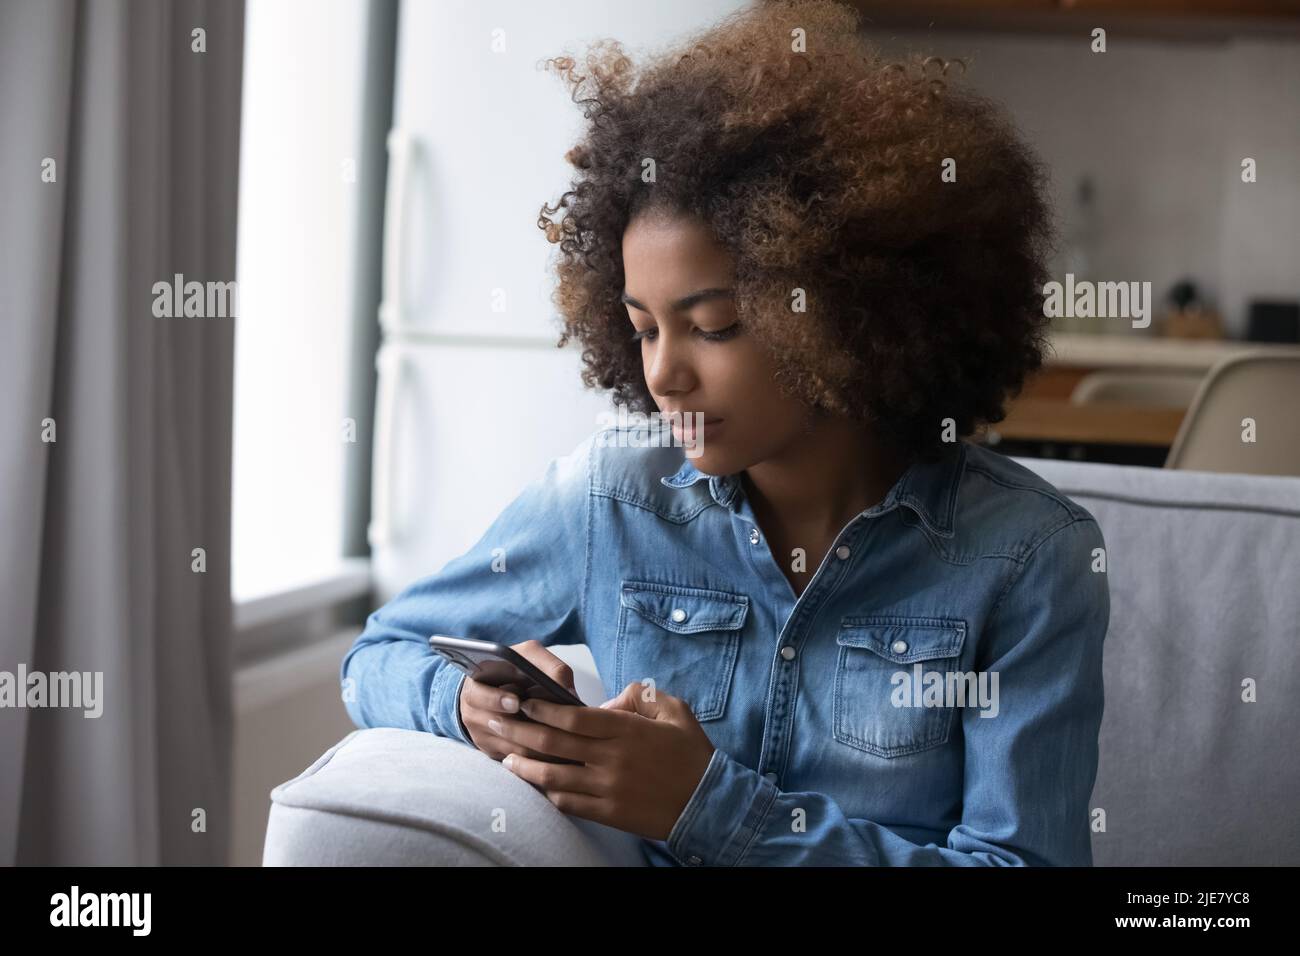 Afrikanisches Teenager-Mädchen liest Nachricht, sendet SMS mit dem Smartphone Stockfoto